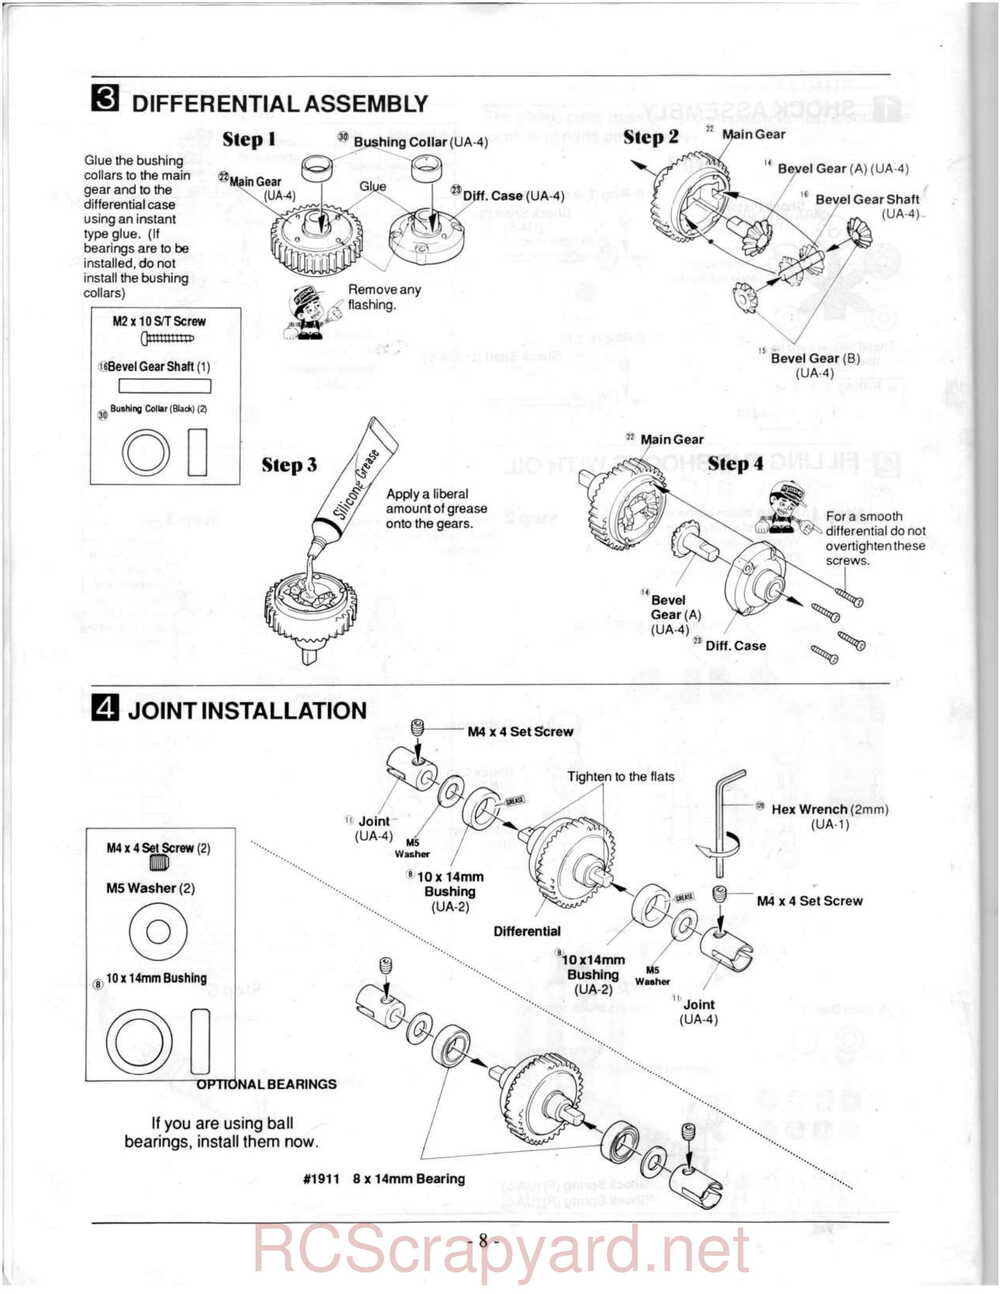 Kyosho - 3118 - Ultima-II - Manual - Page 08